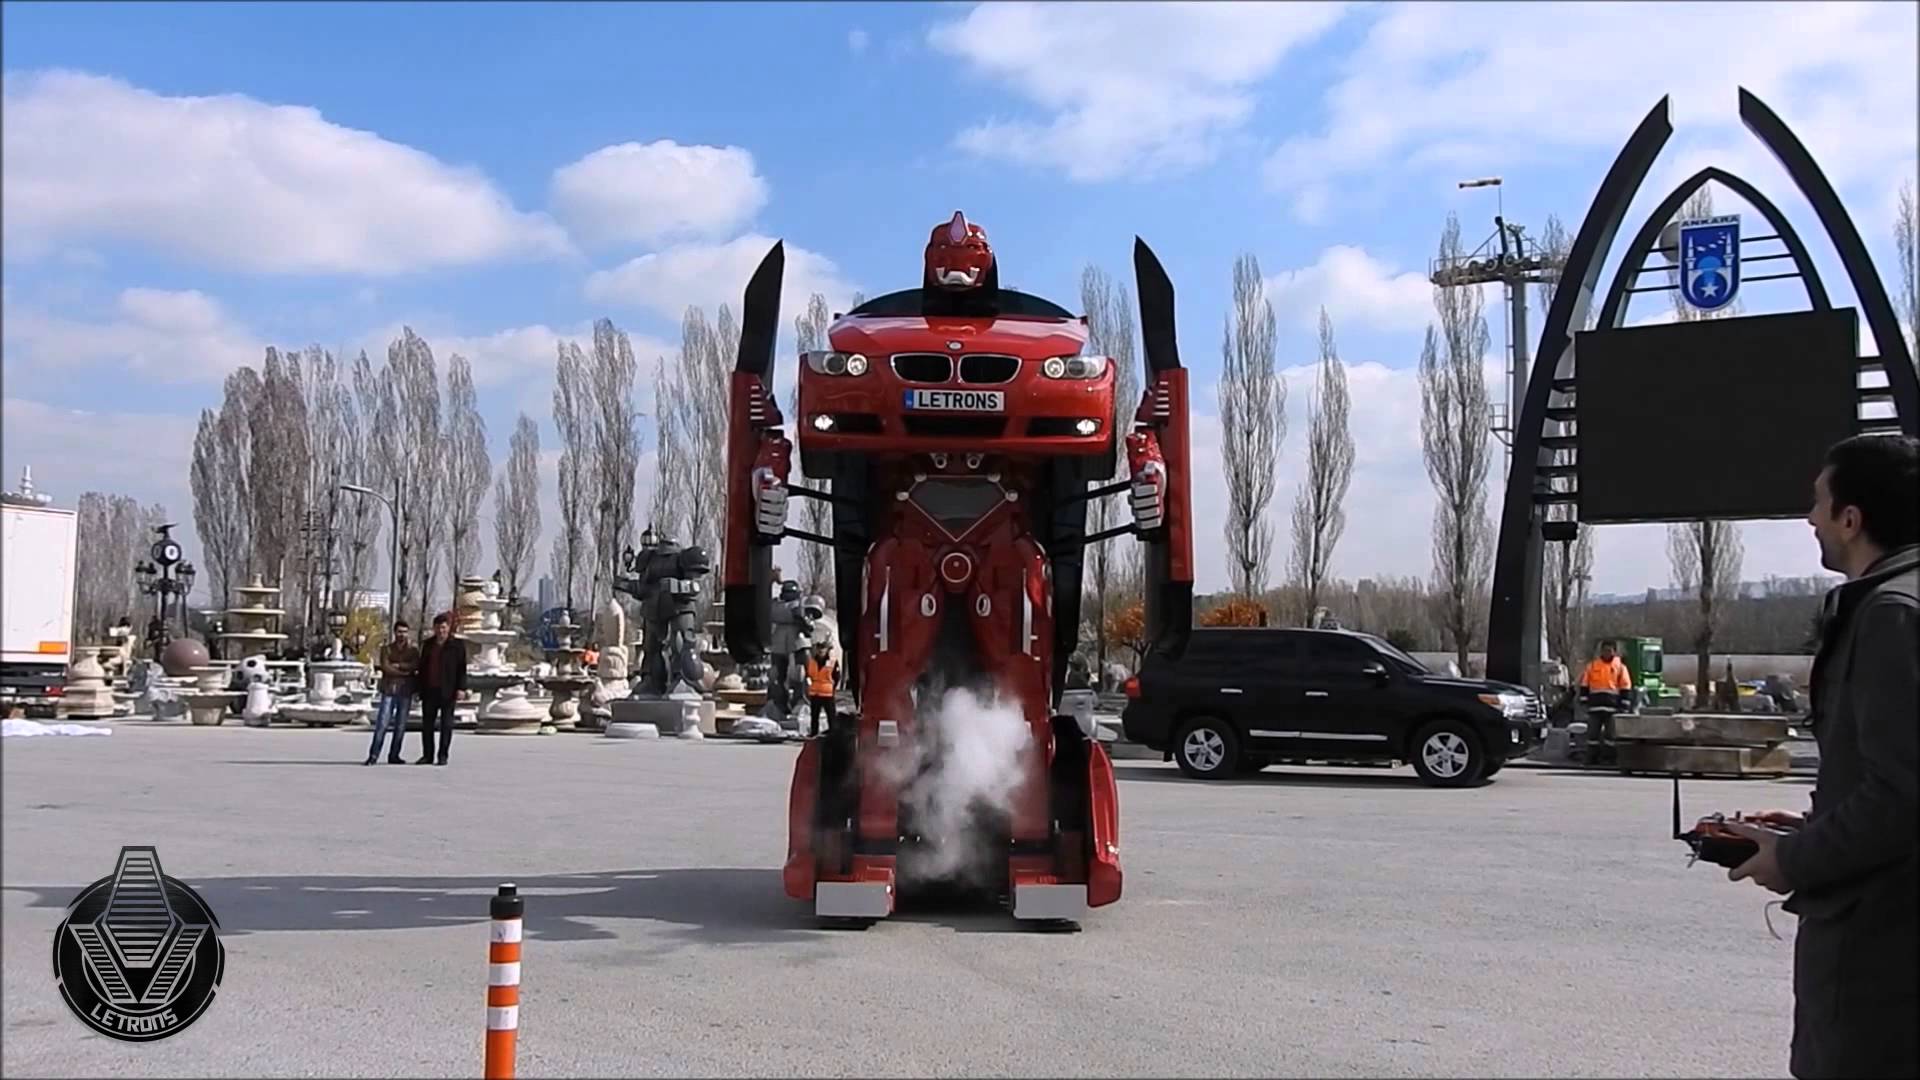 En turkisk ingenjör har gjort en körbar transformers!